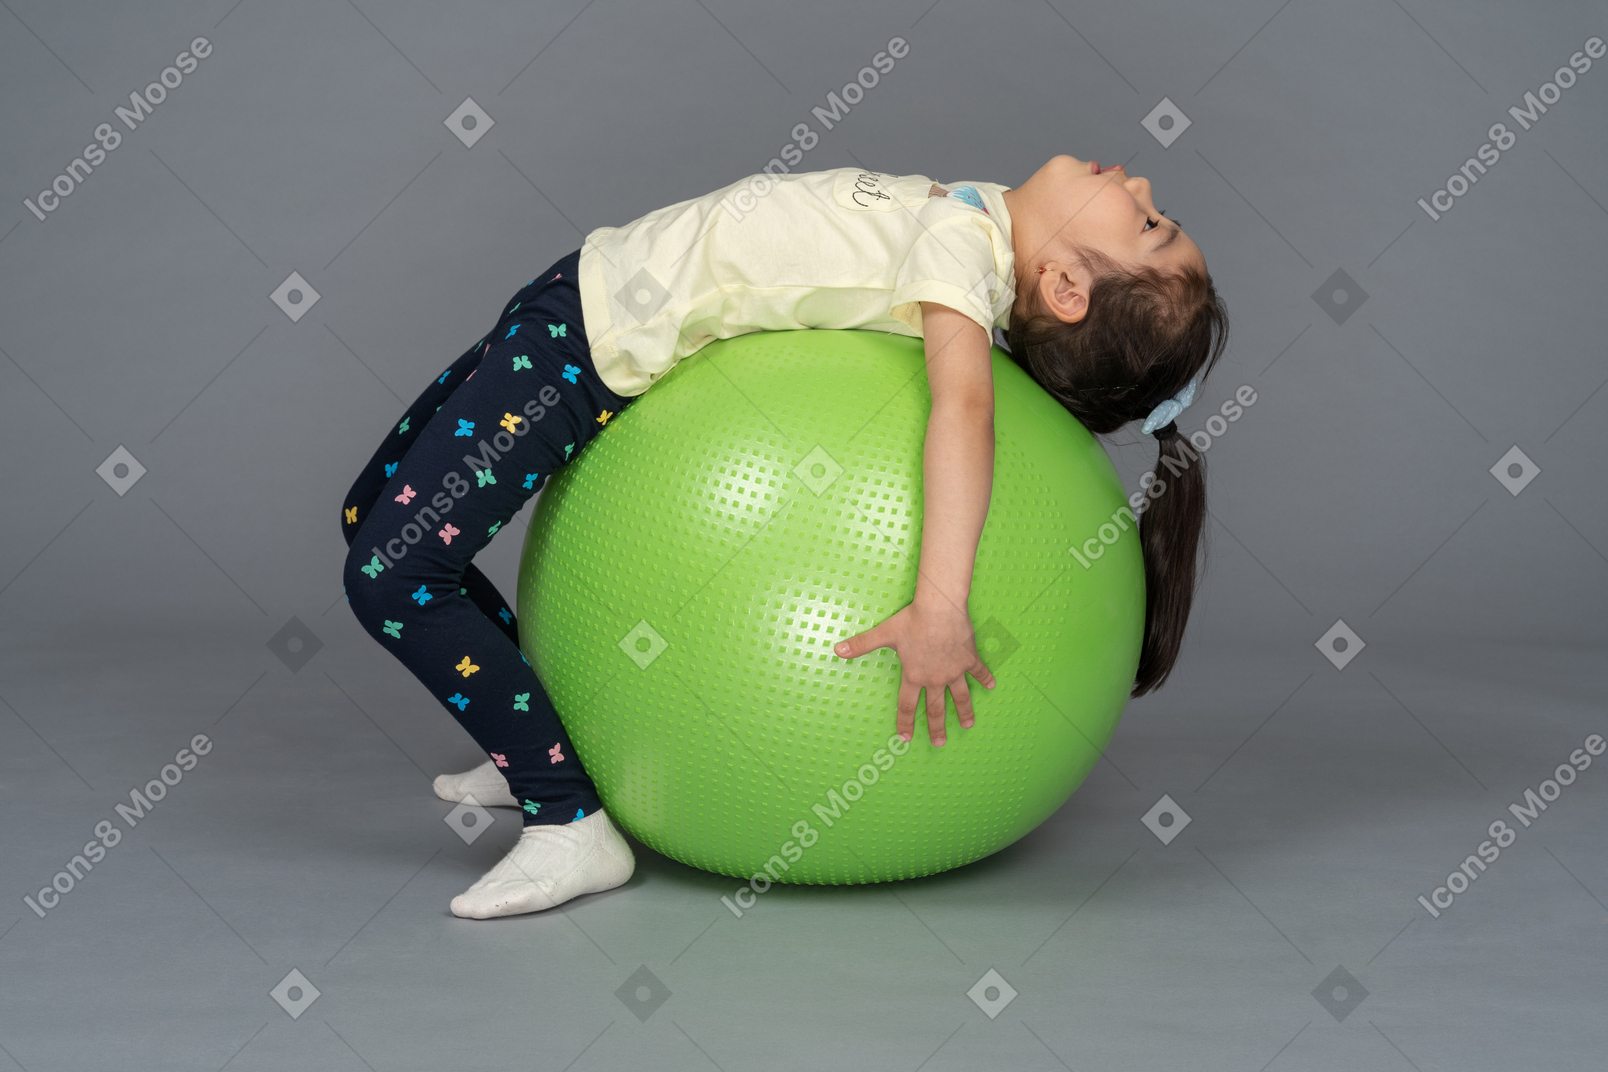 Bambina sdraiata su un fitball verde sulla schiena